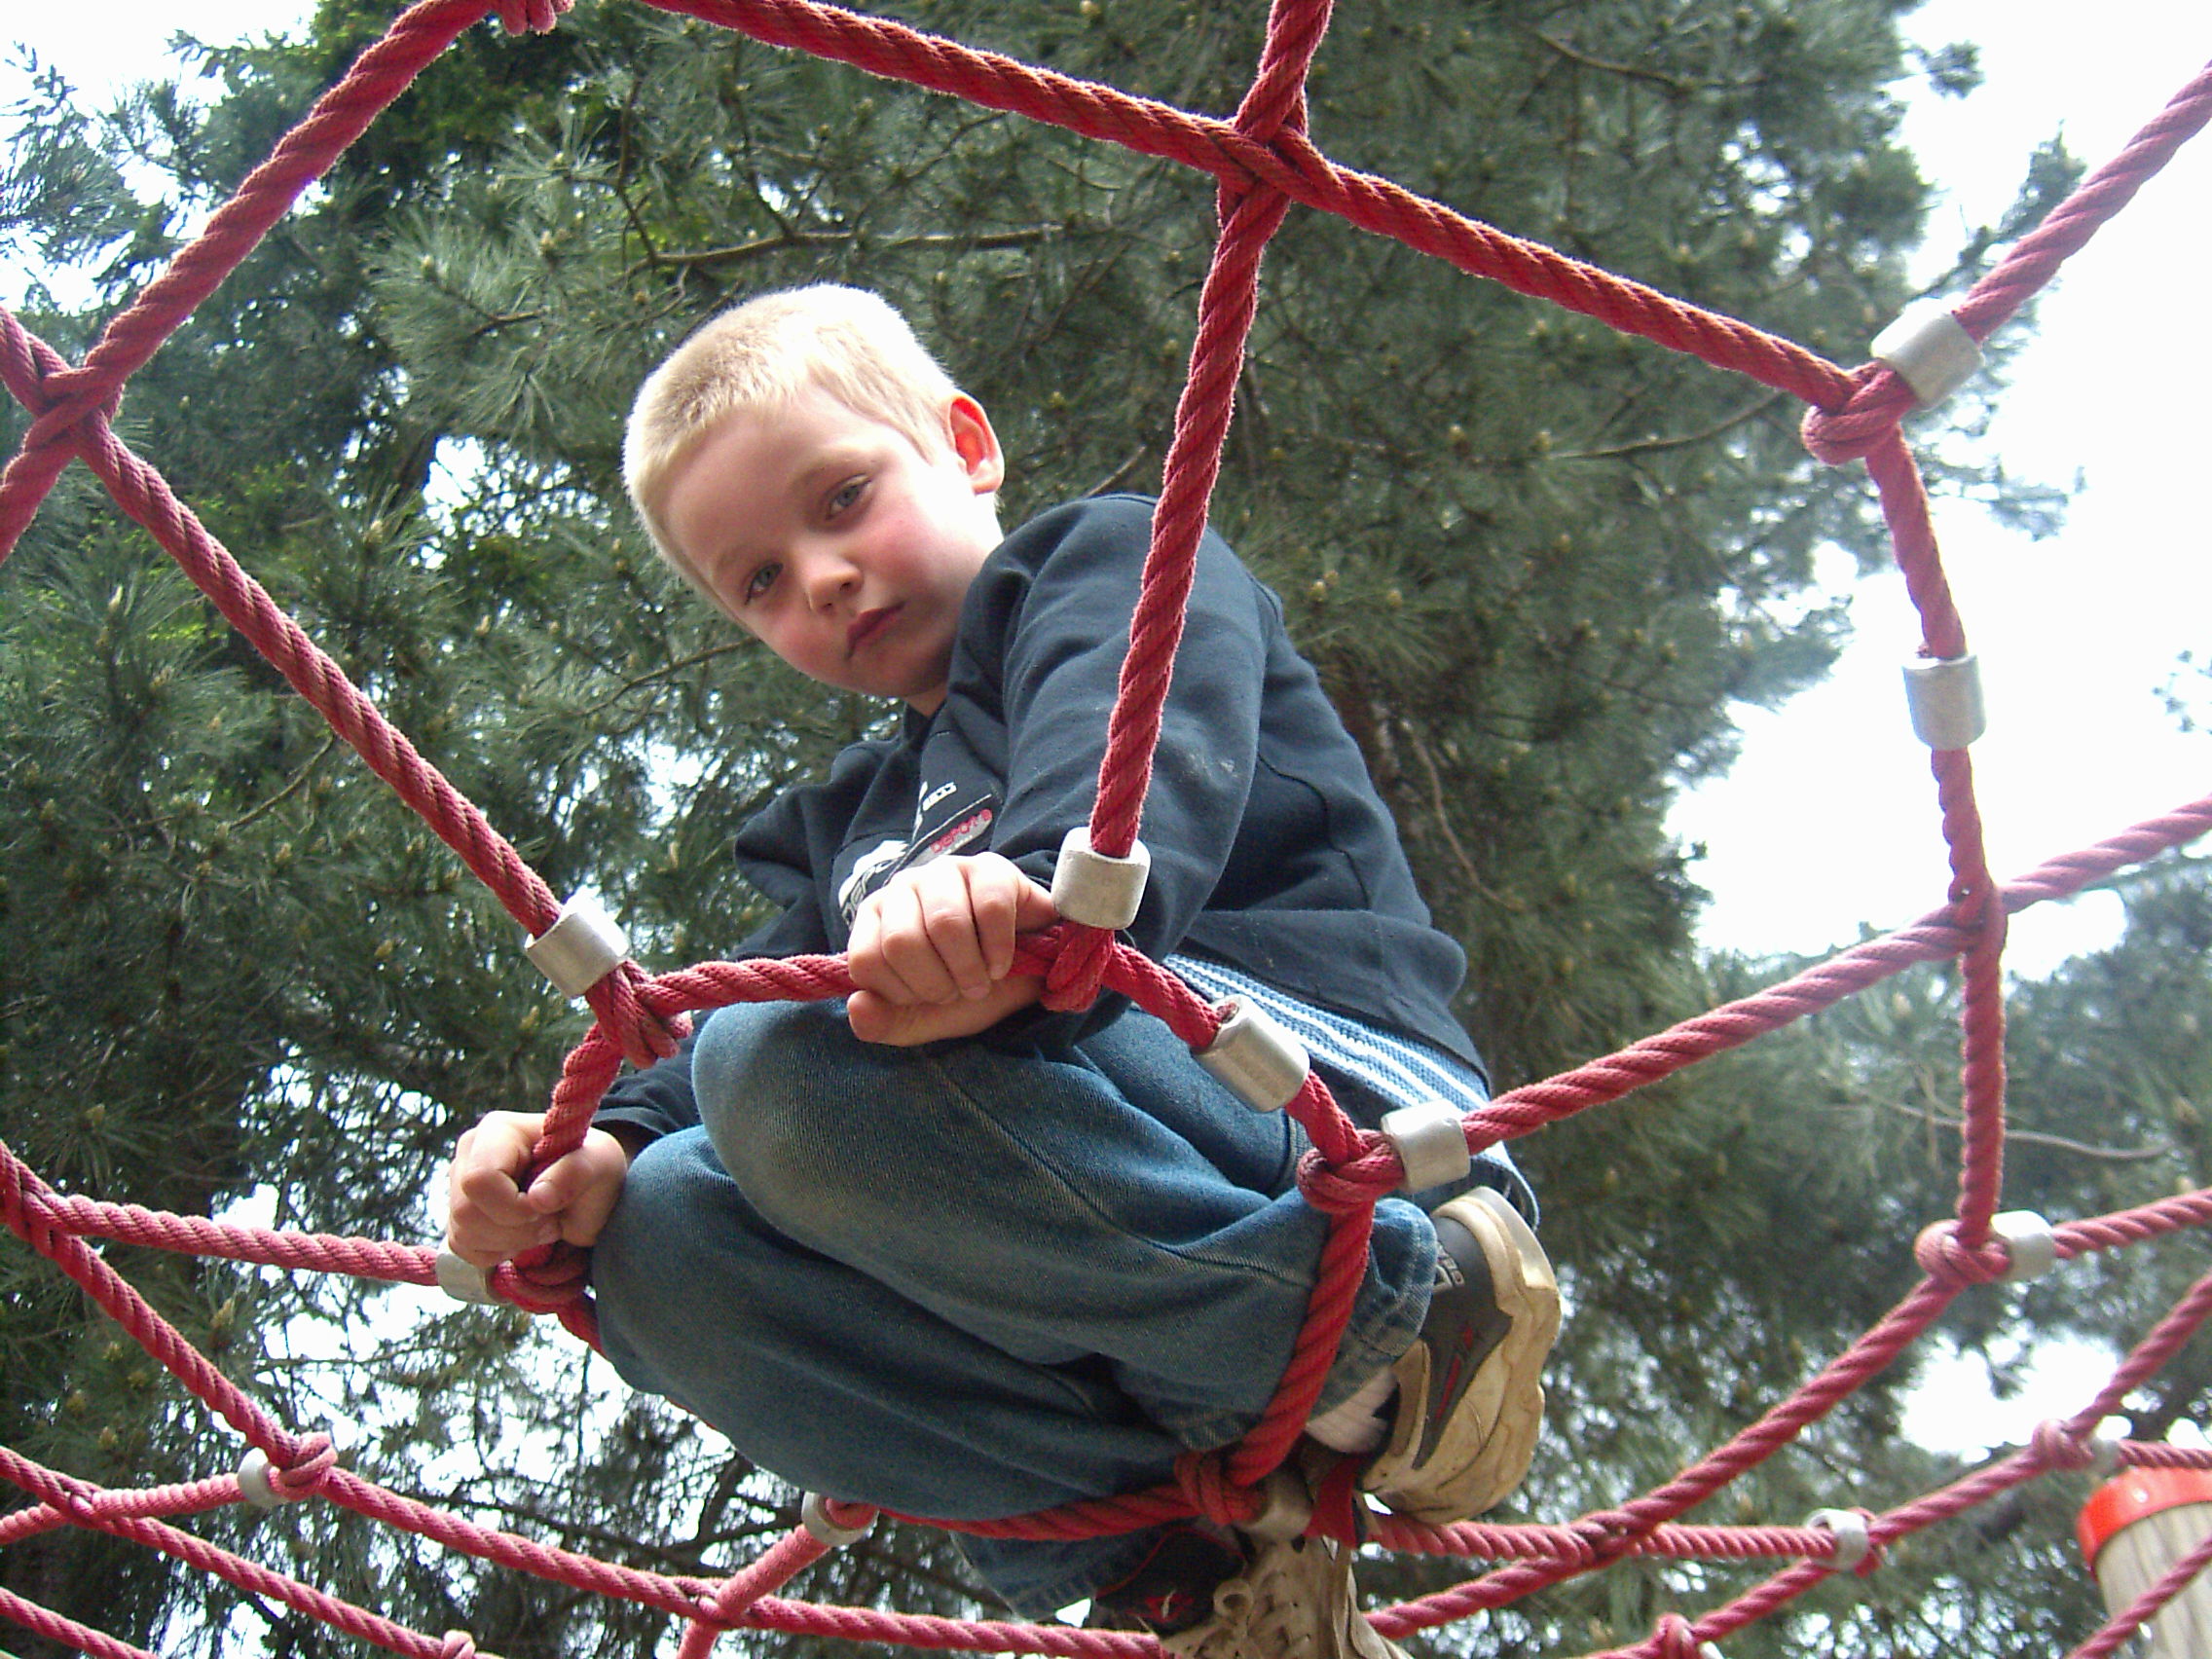 zu sehen ist ein von unten fotografierter kleiner Junge, der knieend von einem Spinnennetz eines Kinderspielplatzes gehalten wird, und in die Kamera schaut